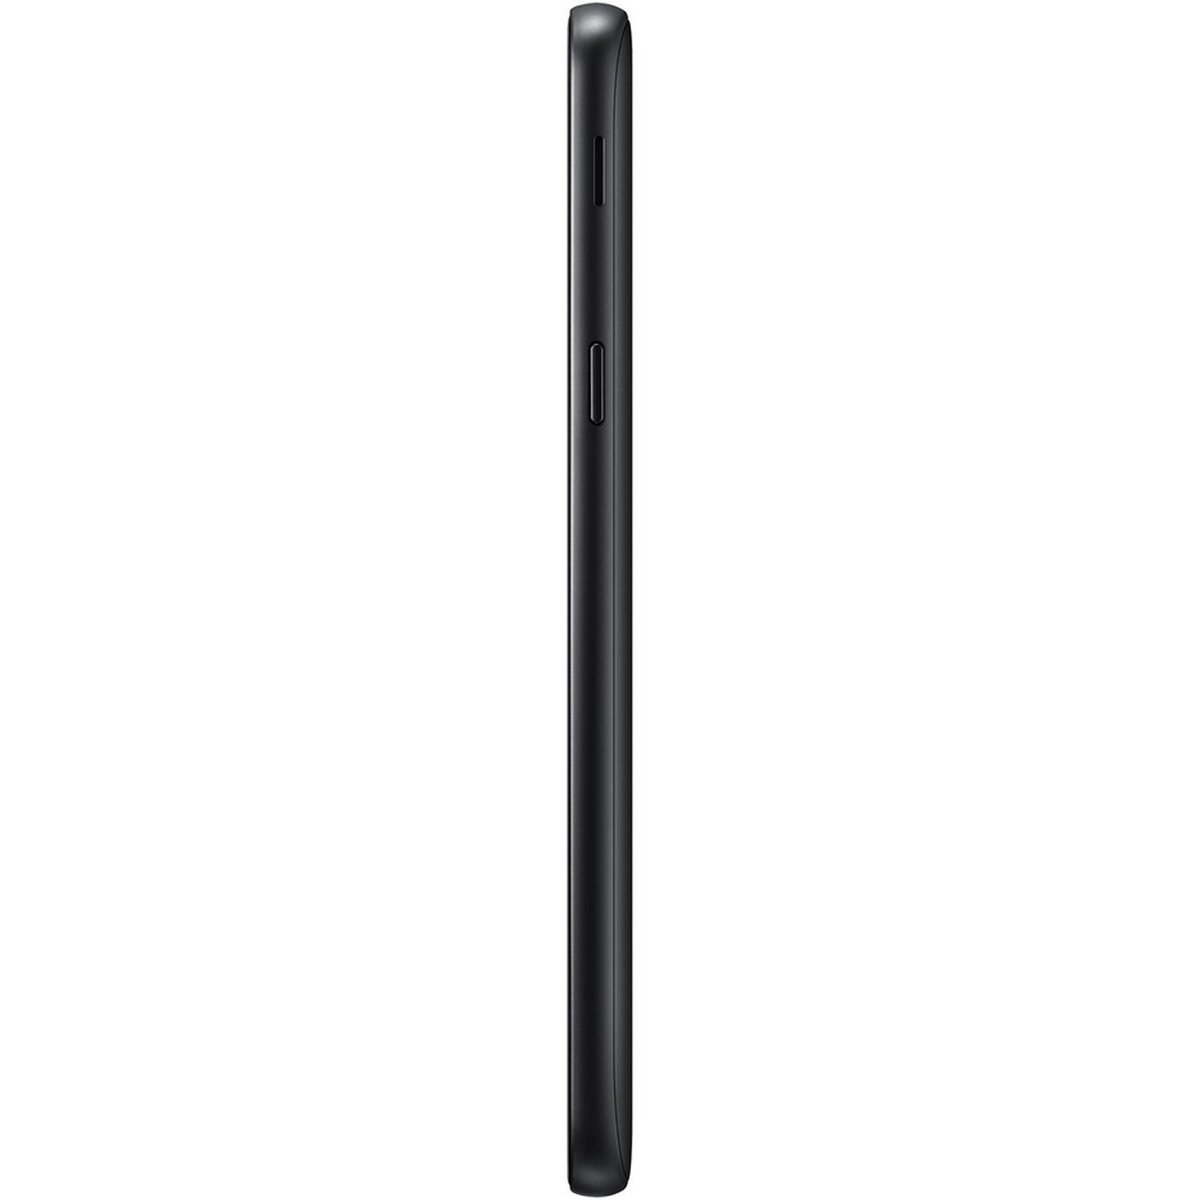 Samsung Galaxy J6 SM-J600FZ 32GB Black